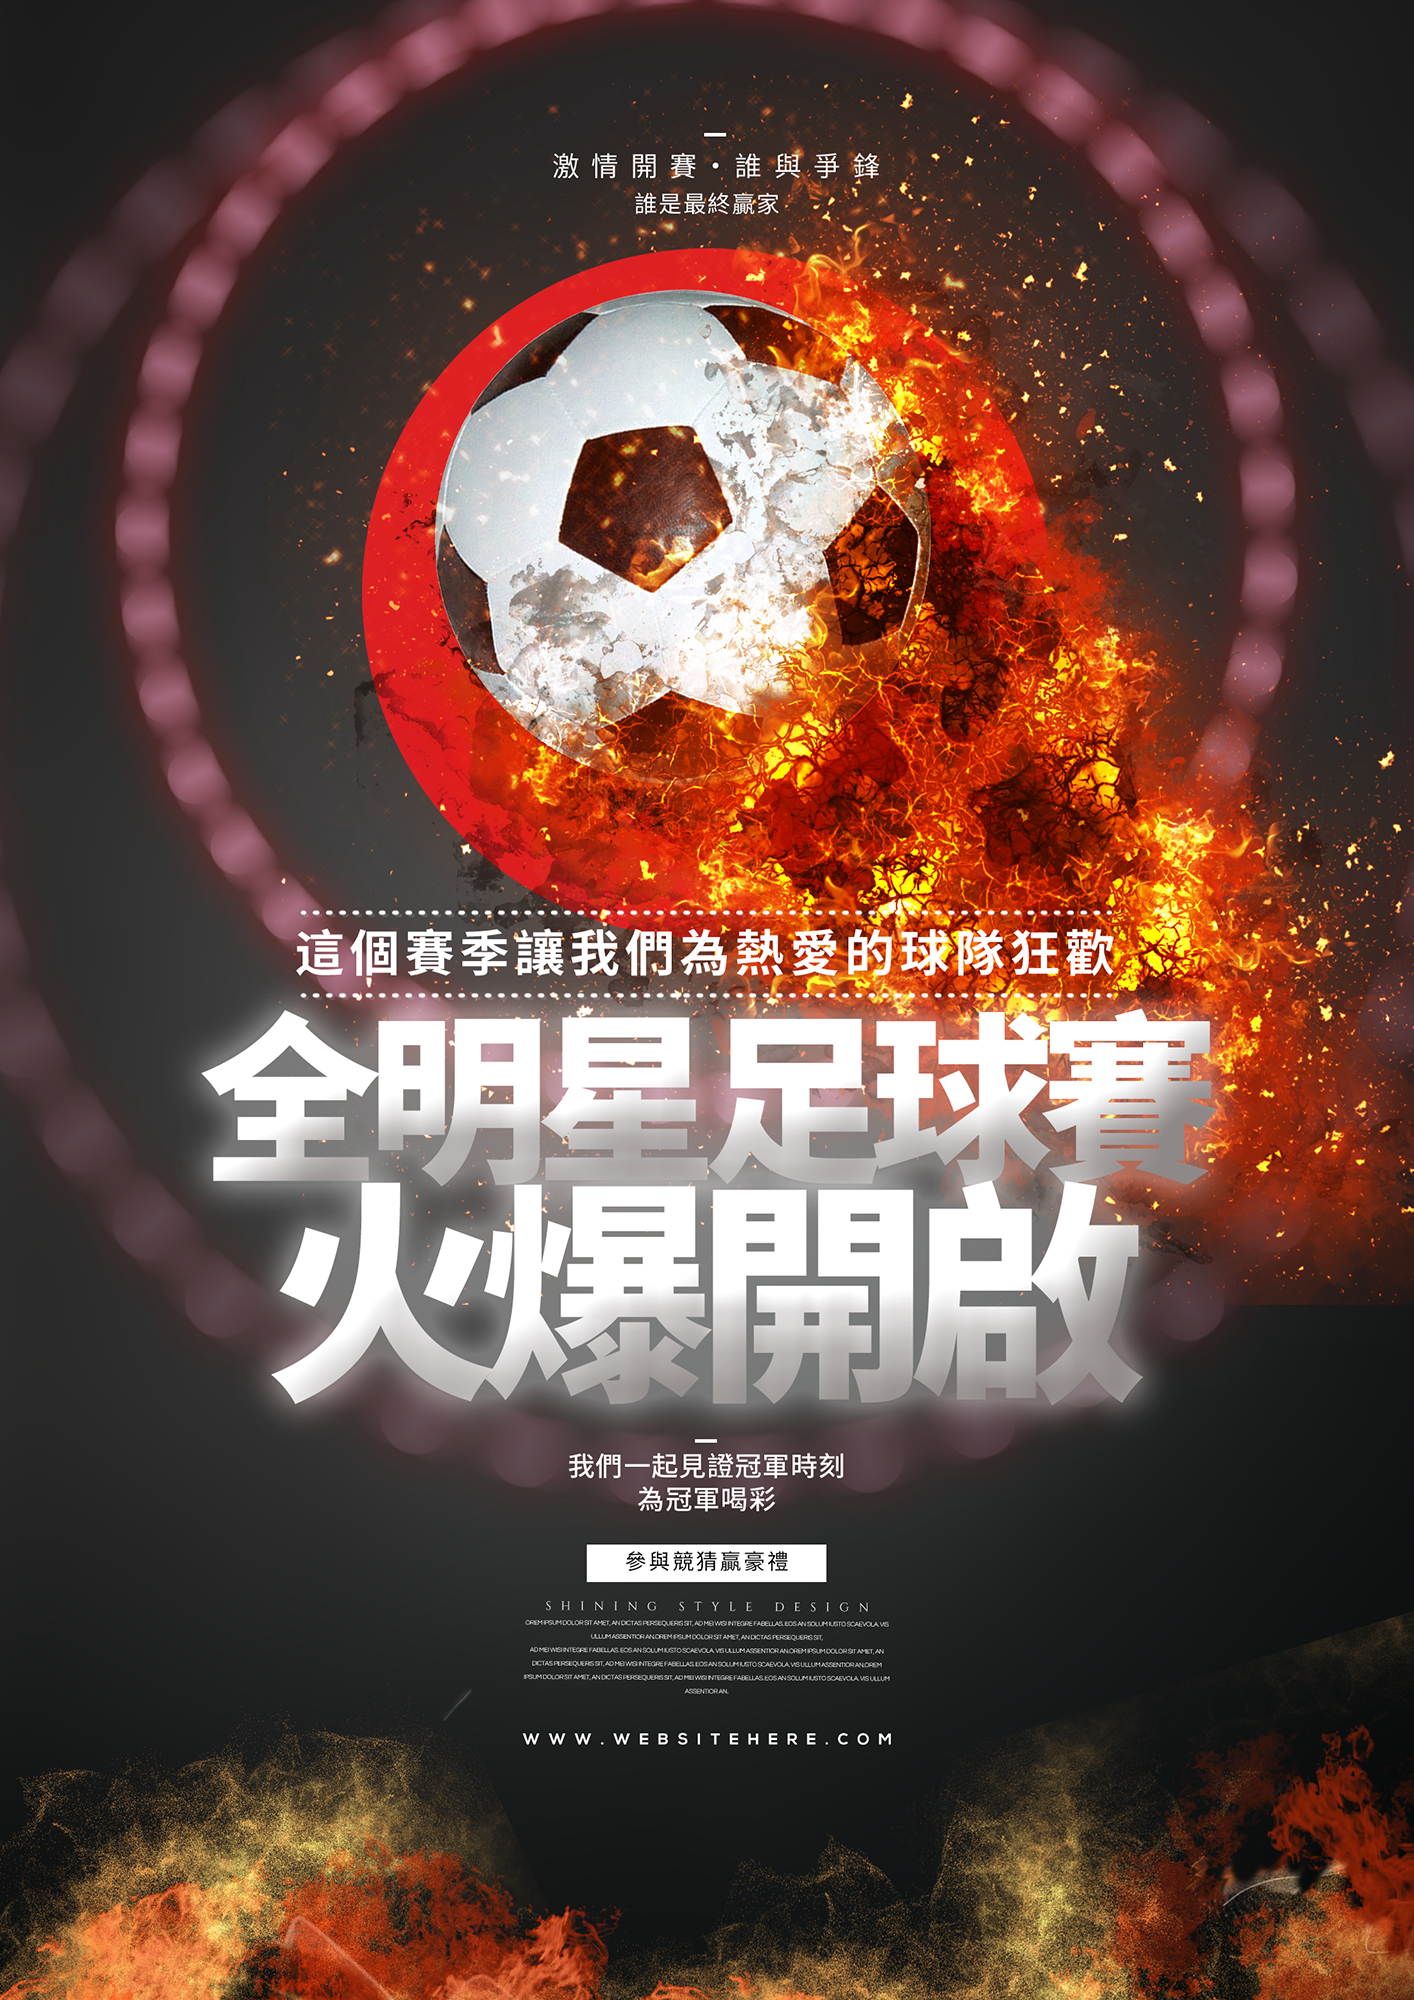 火焰足球俱乐部联赛体育竞技比赛海报图片